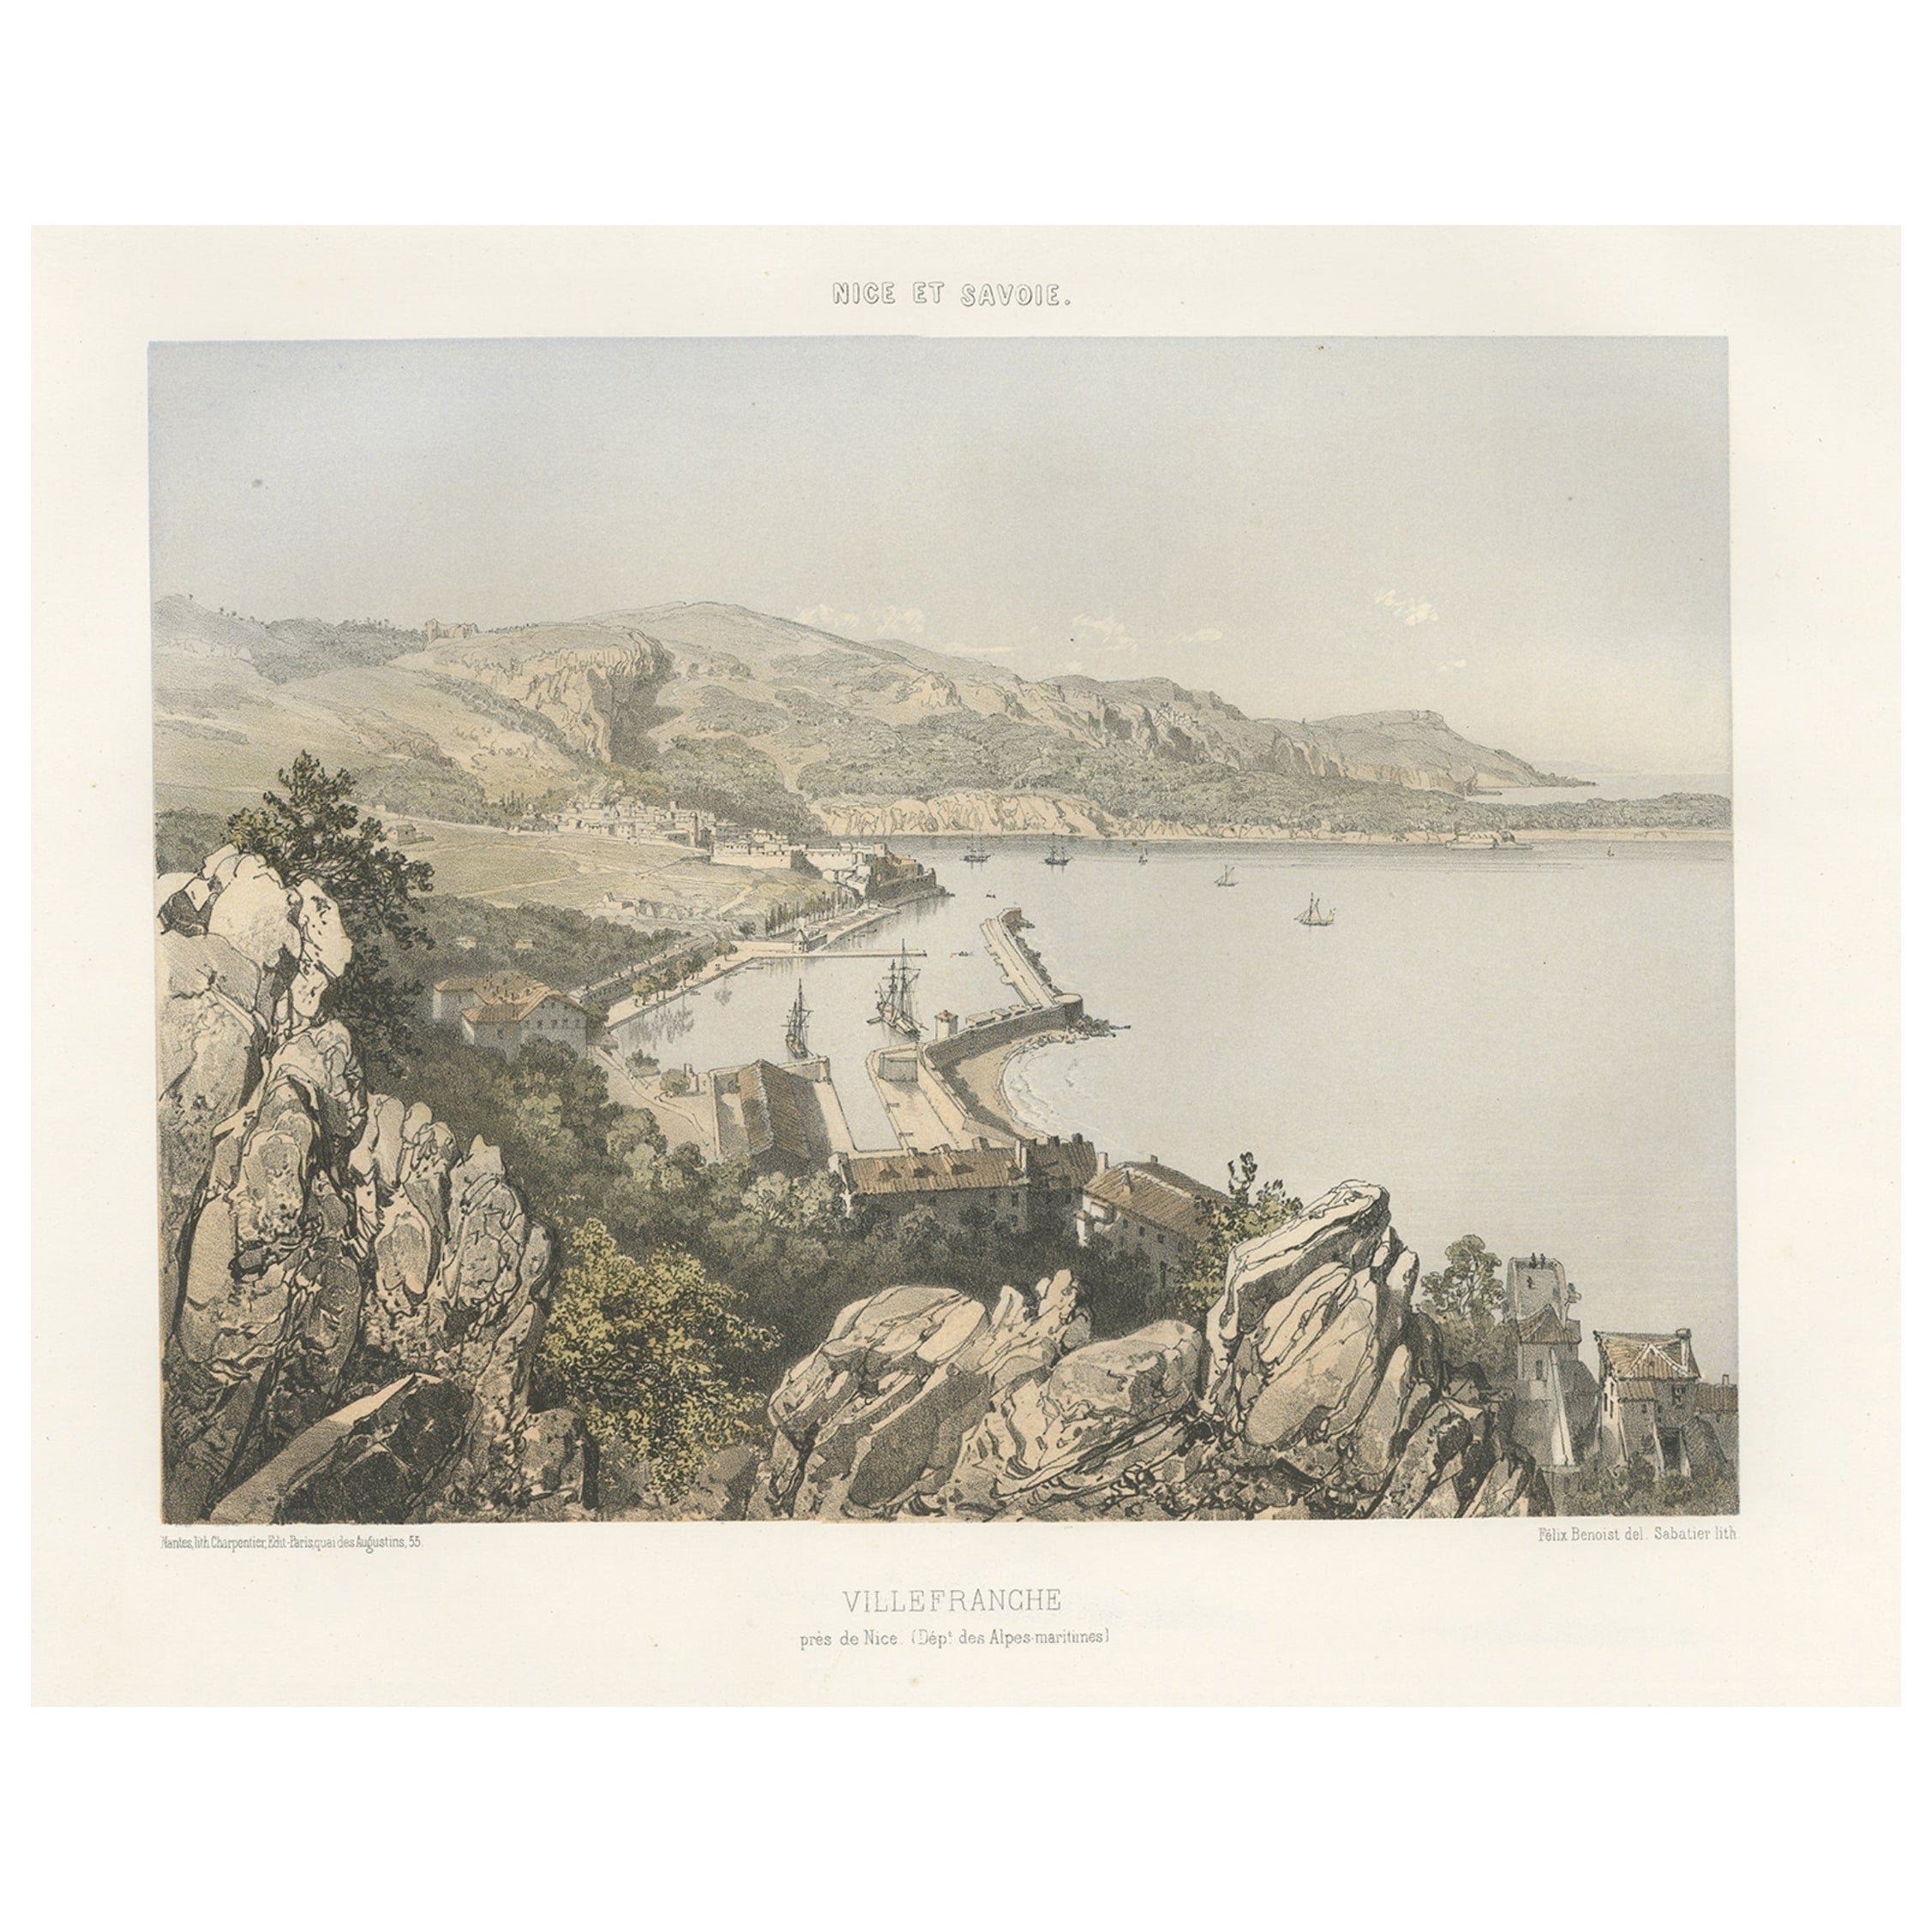 Antiker Druck von Villefranche in der Region Nizza und Savoyen in Frankreich, ca. 1865